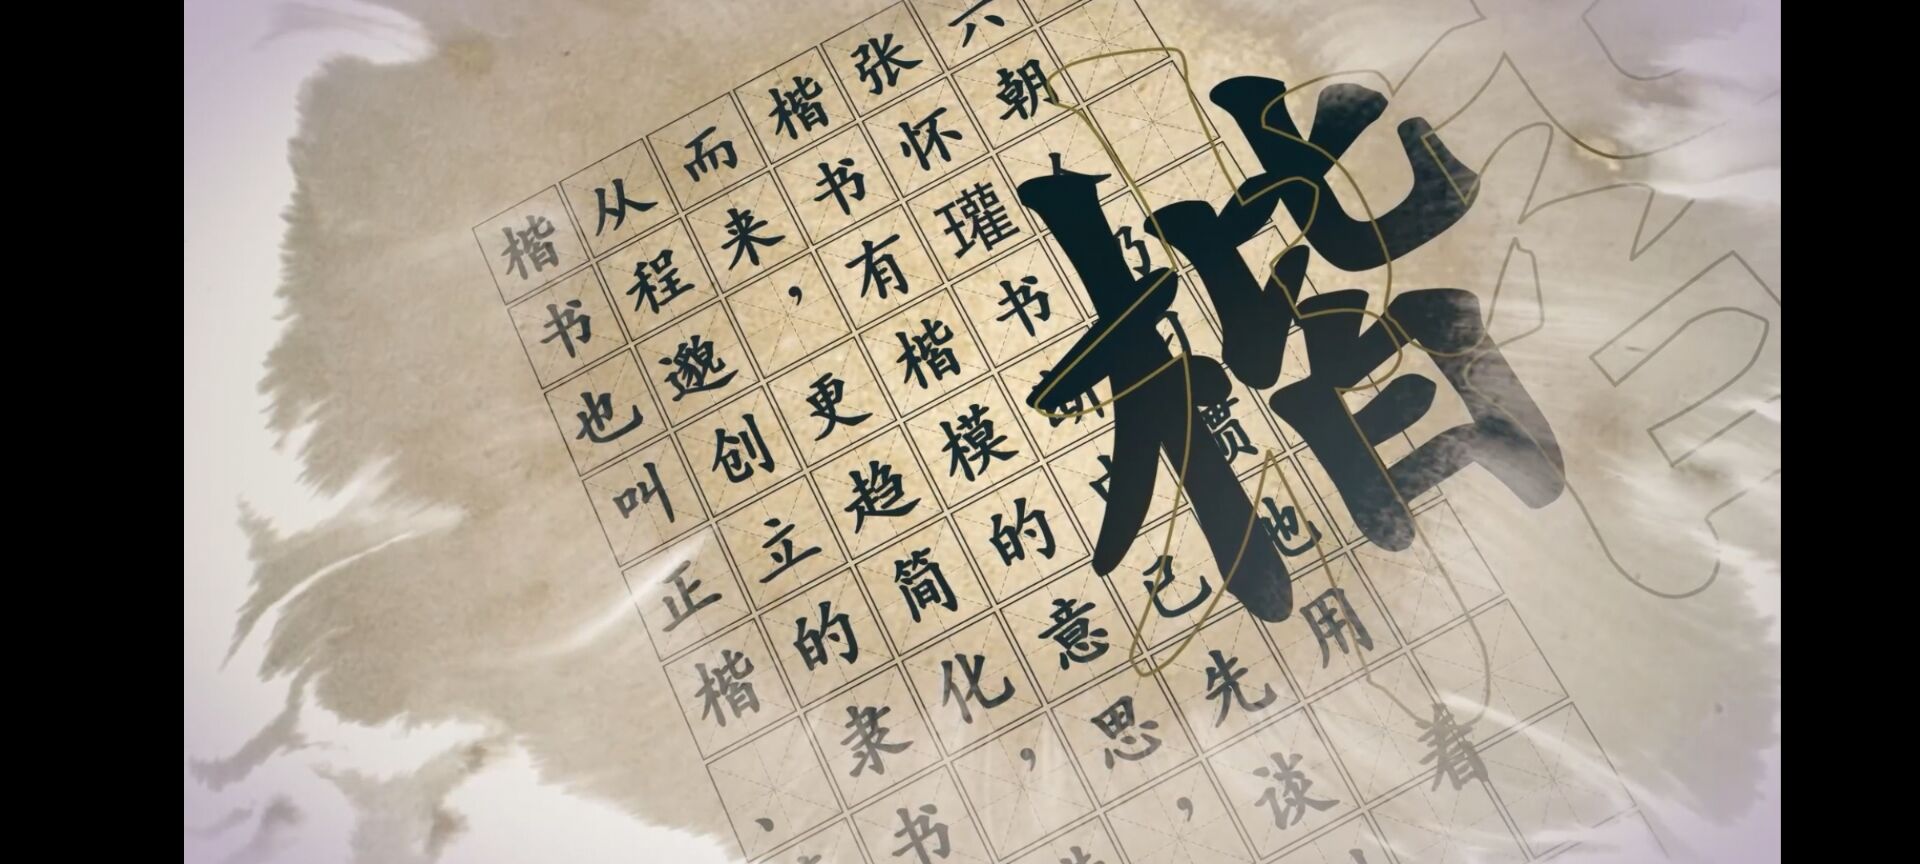 影视动漫竞赛作品——传承中华文明，弘扬书法艺术